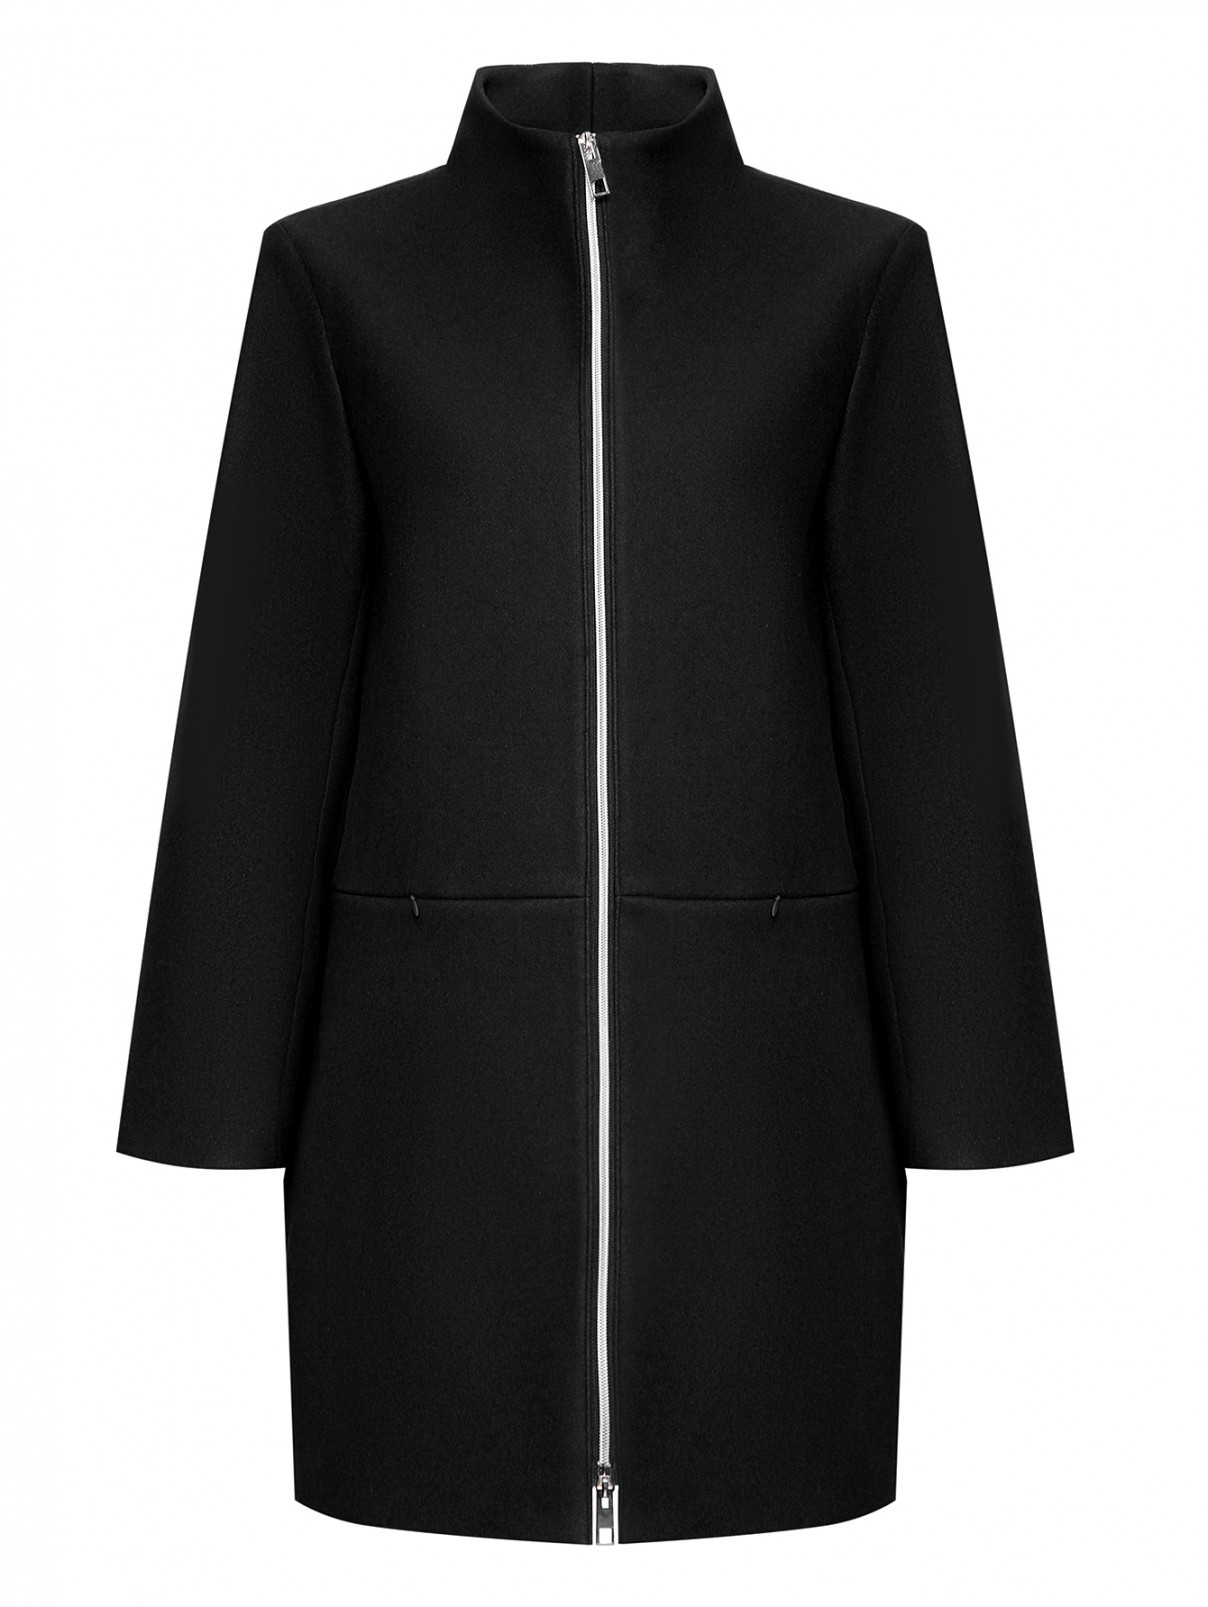 Пальто на молнии Marina Rinaldi  –  Общий вид  – Цвет:  Черный